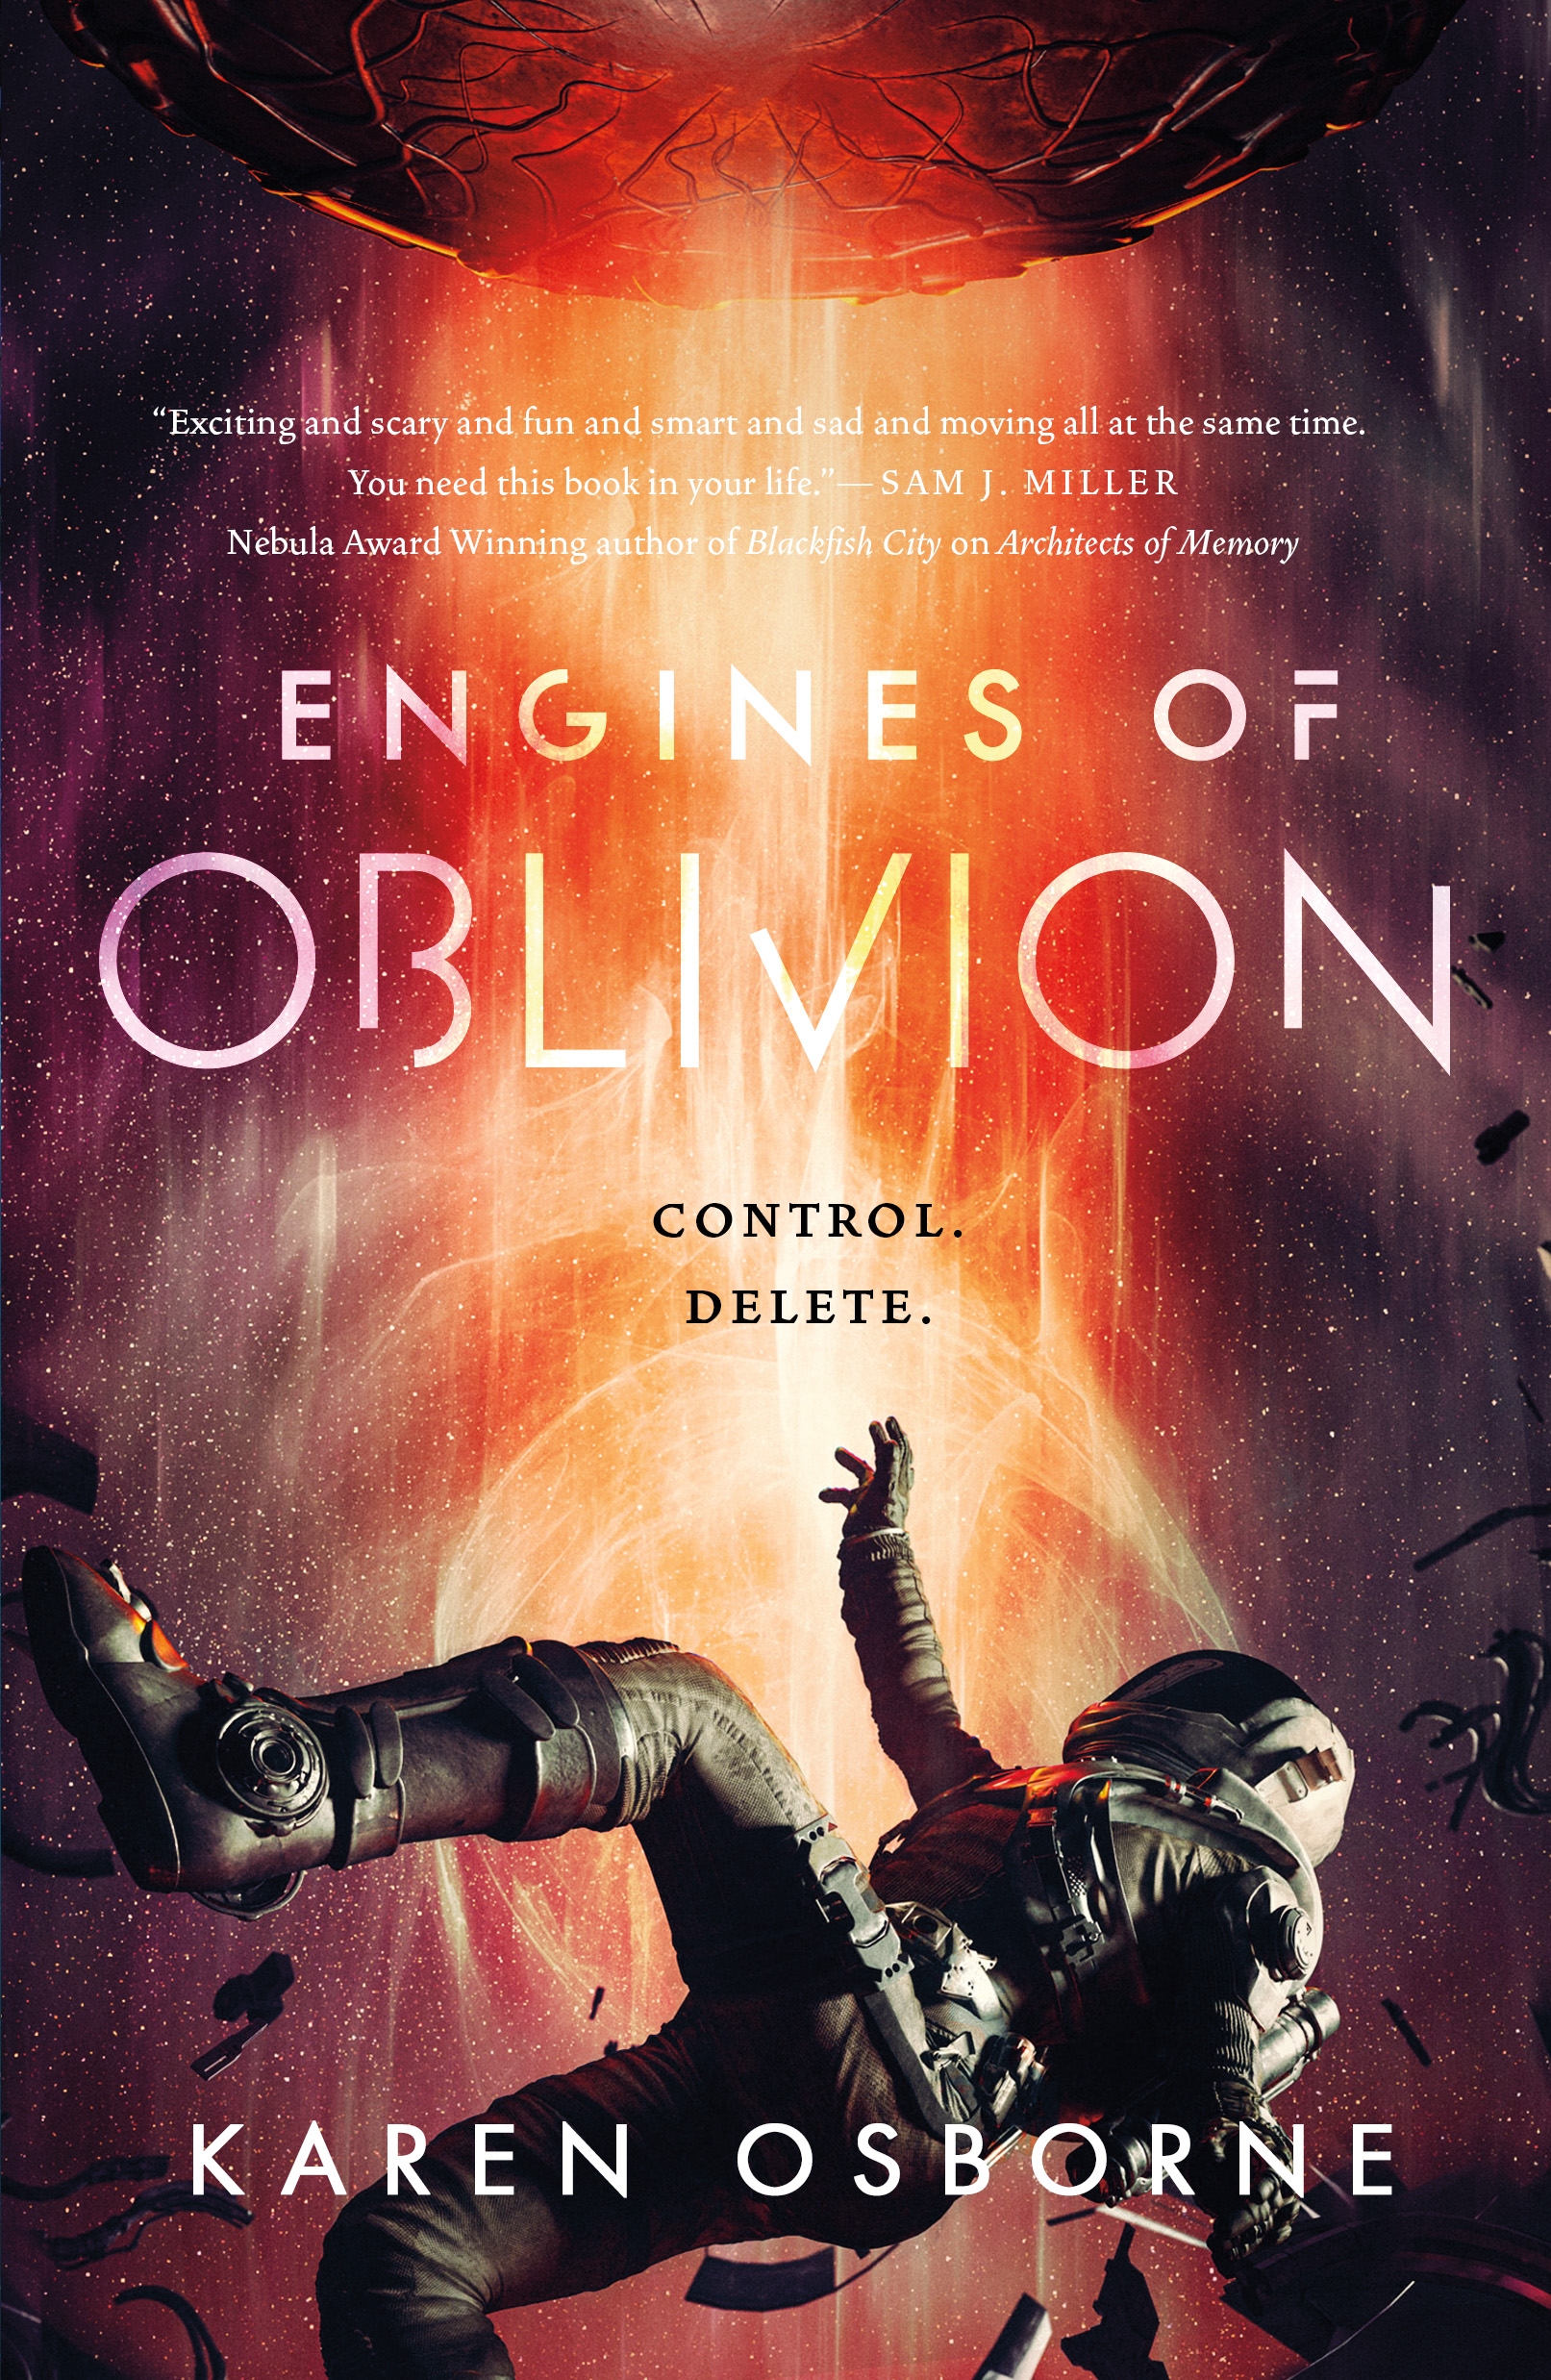 Engines of Oblivion by Karen Osborne